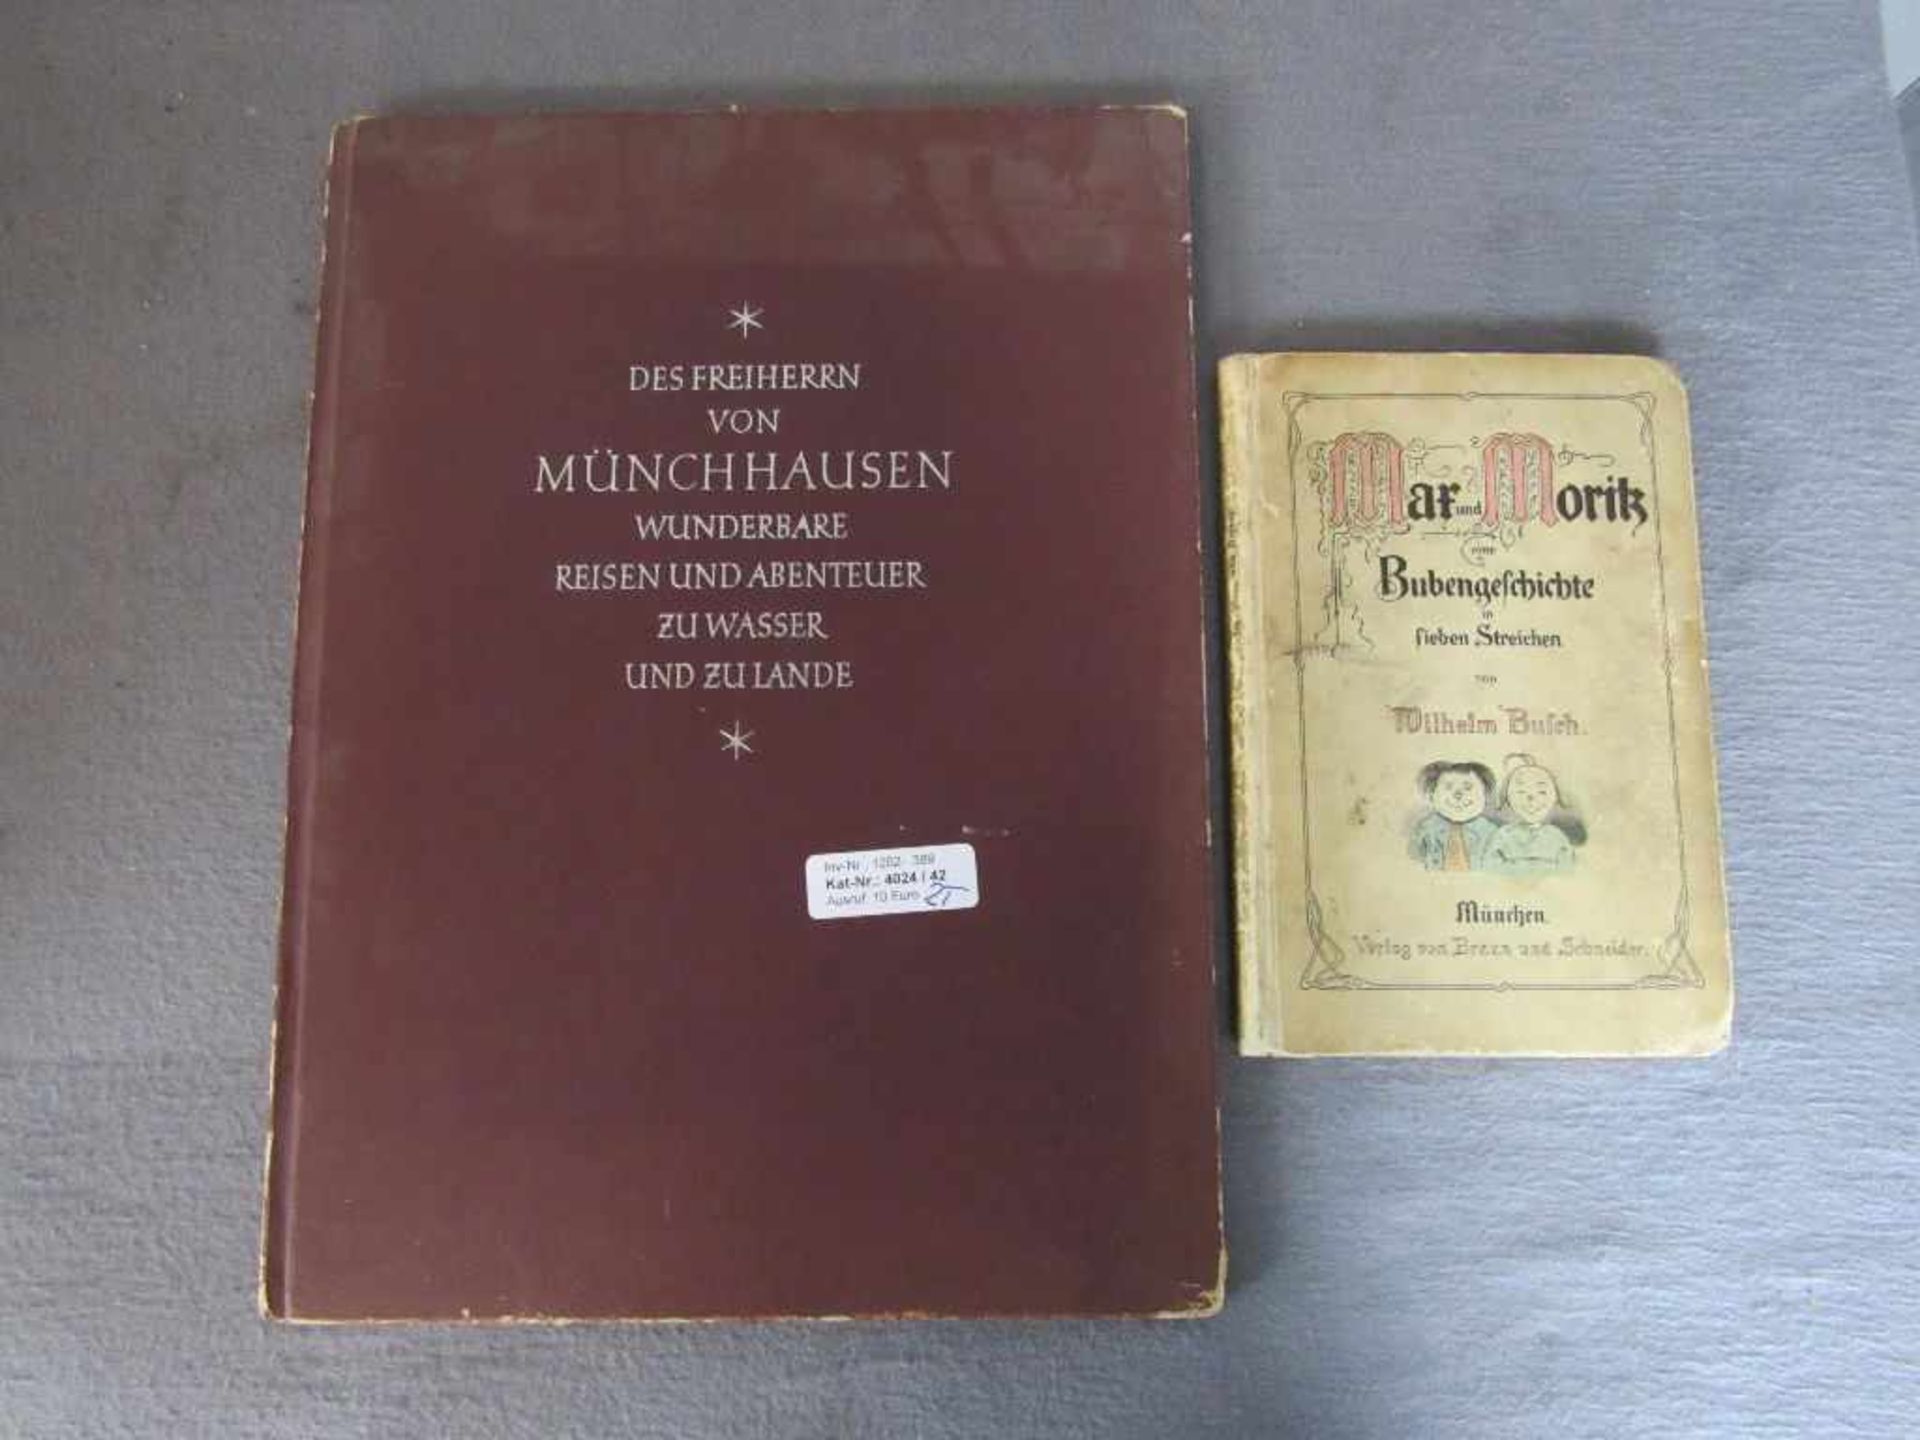 Max und Moritz Wilhelm Busch und Großformat Münchhausen- - -20.00 % buyer's premium on the hammer